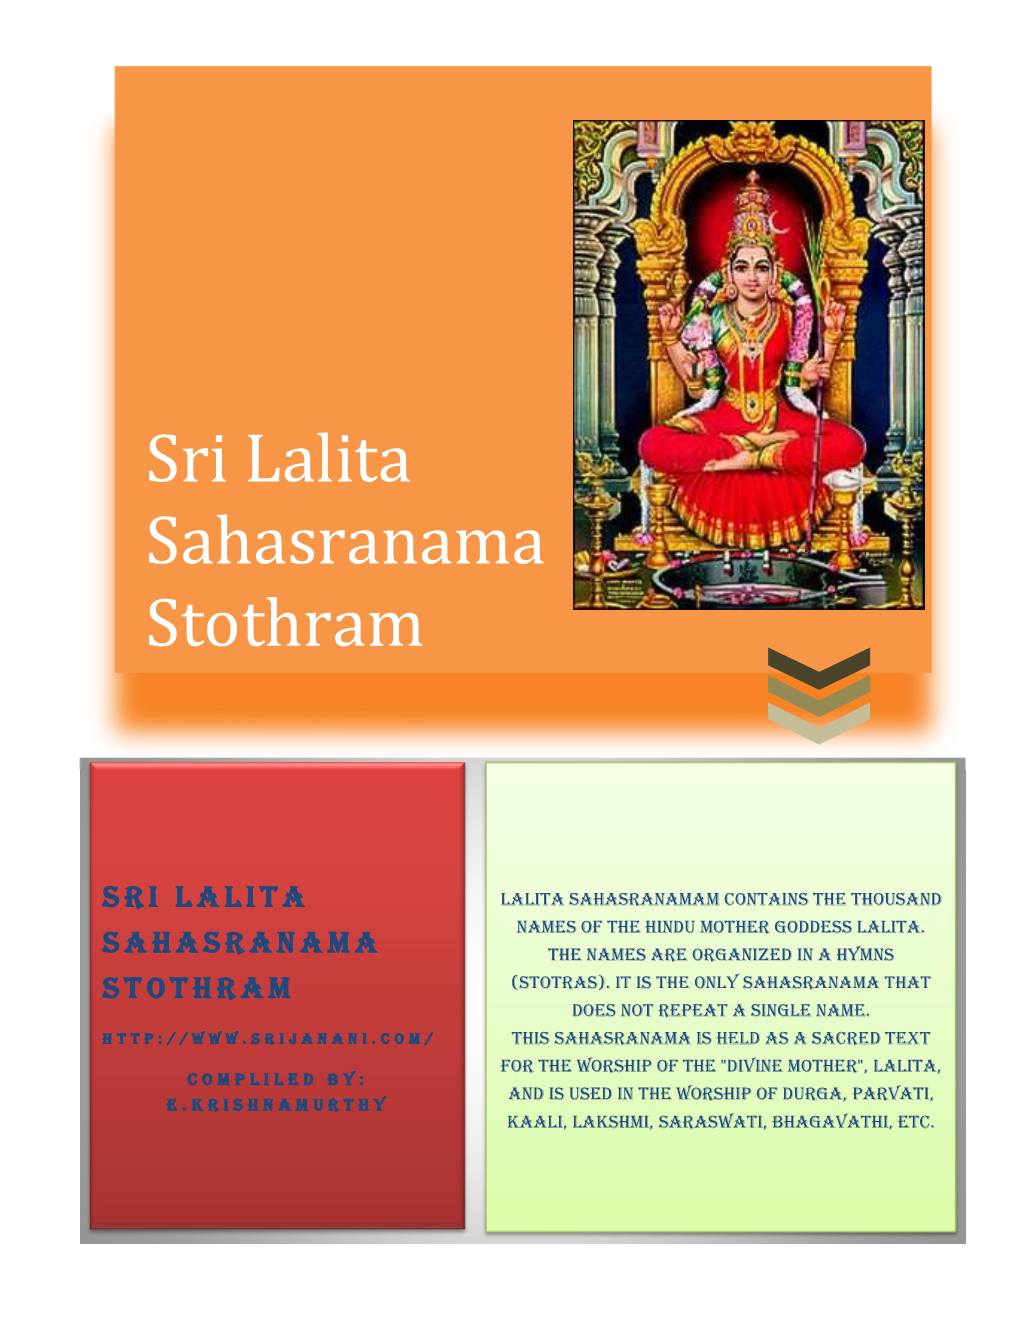 Sri Lalita Sahasranama Stothram